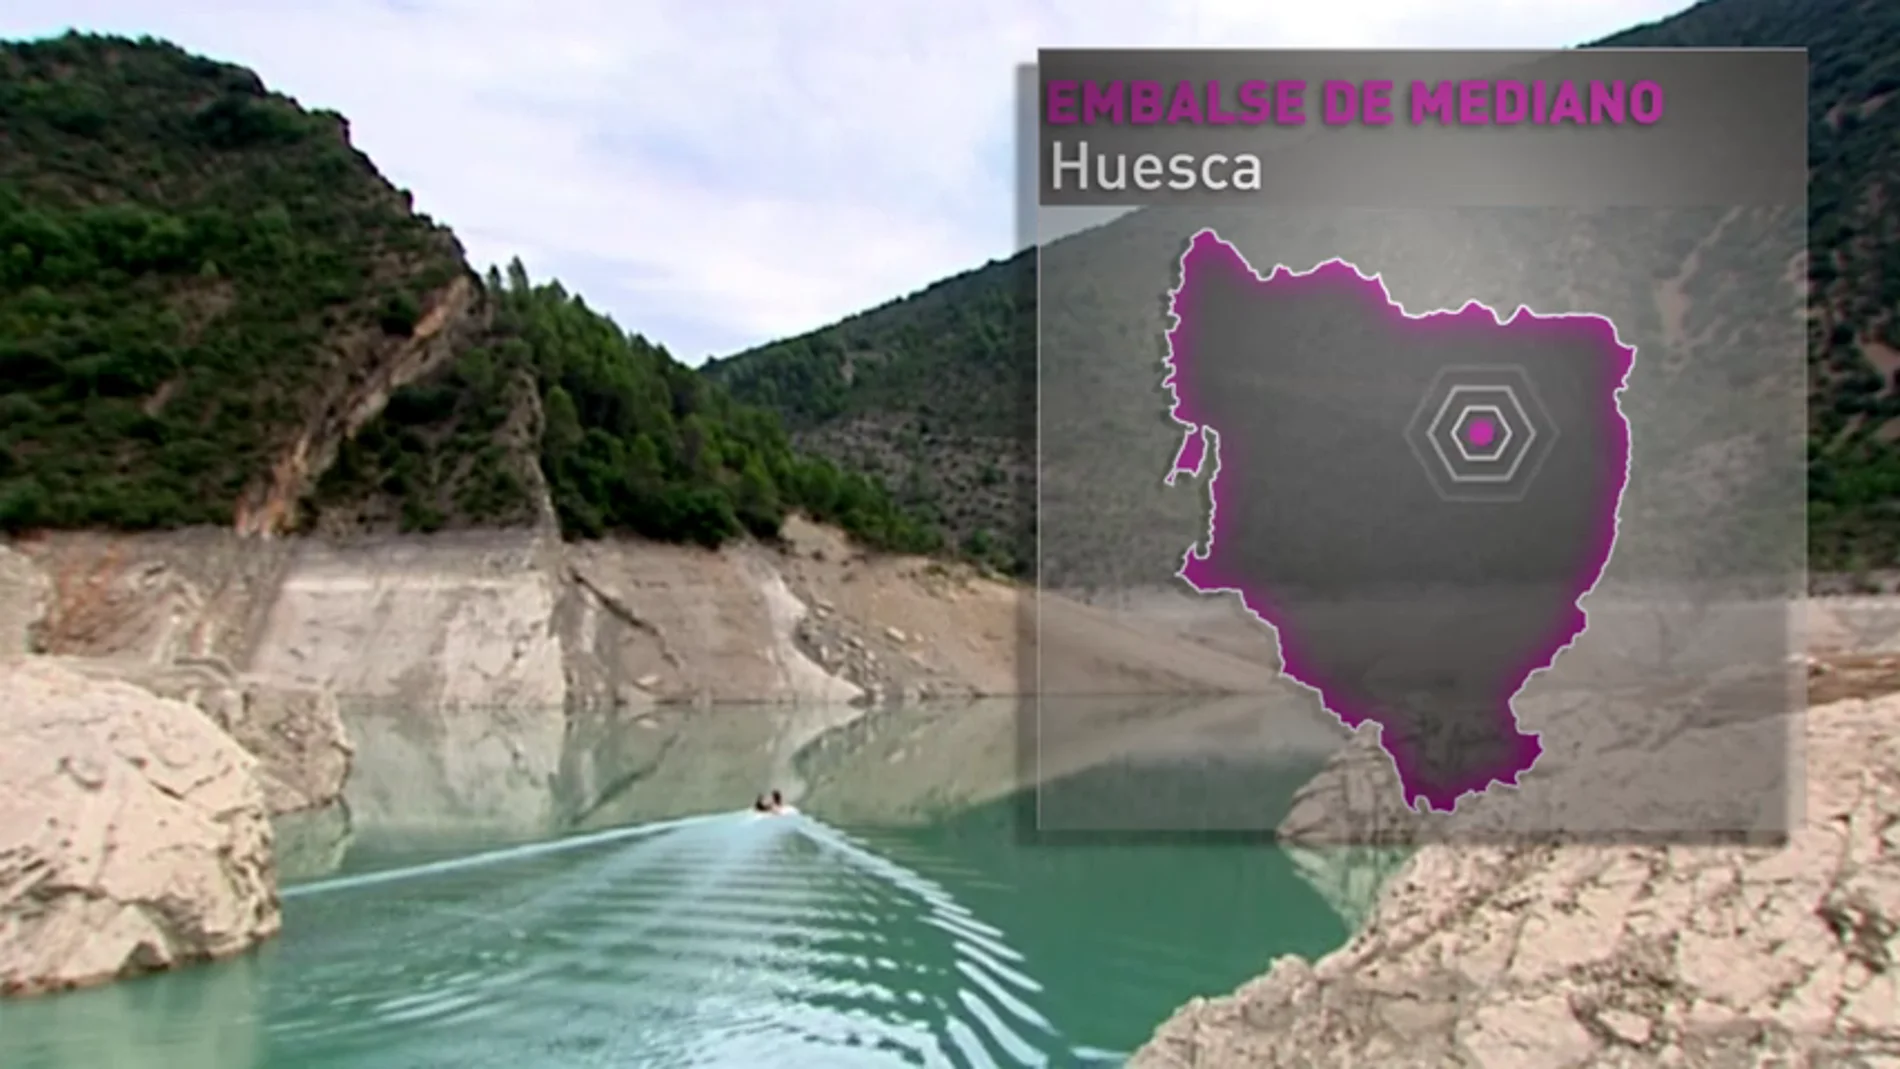 El embalse de Mediano, el reflejo más duro y fiel del problema del agua que está atravesando España